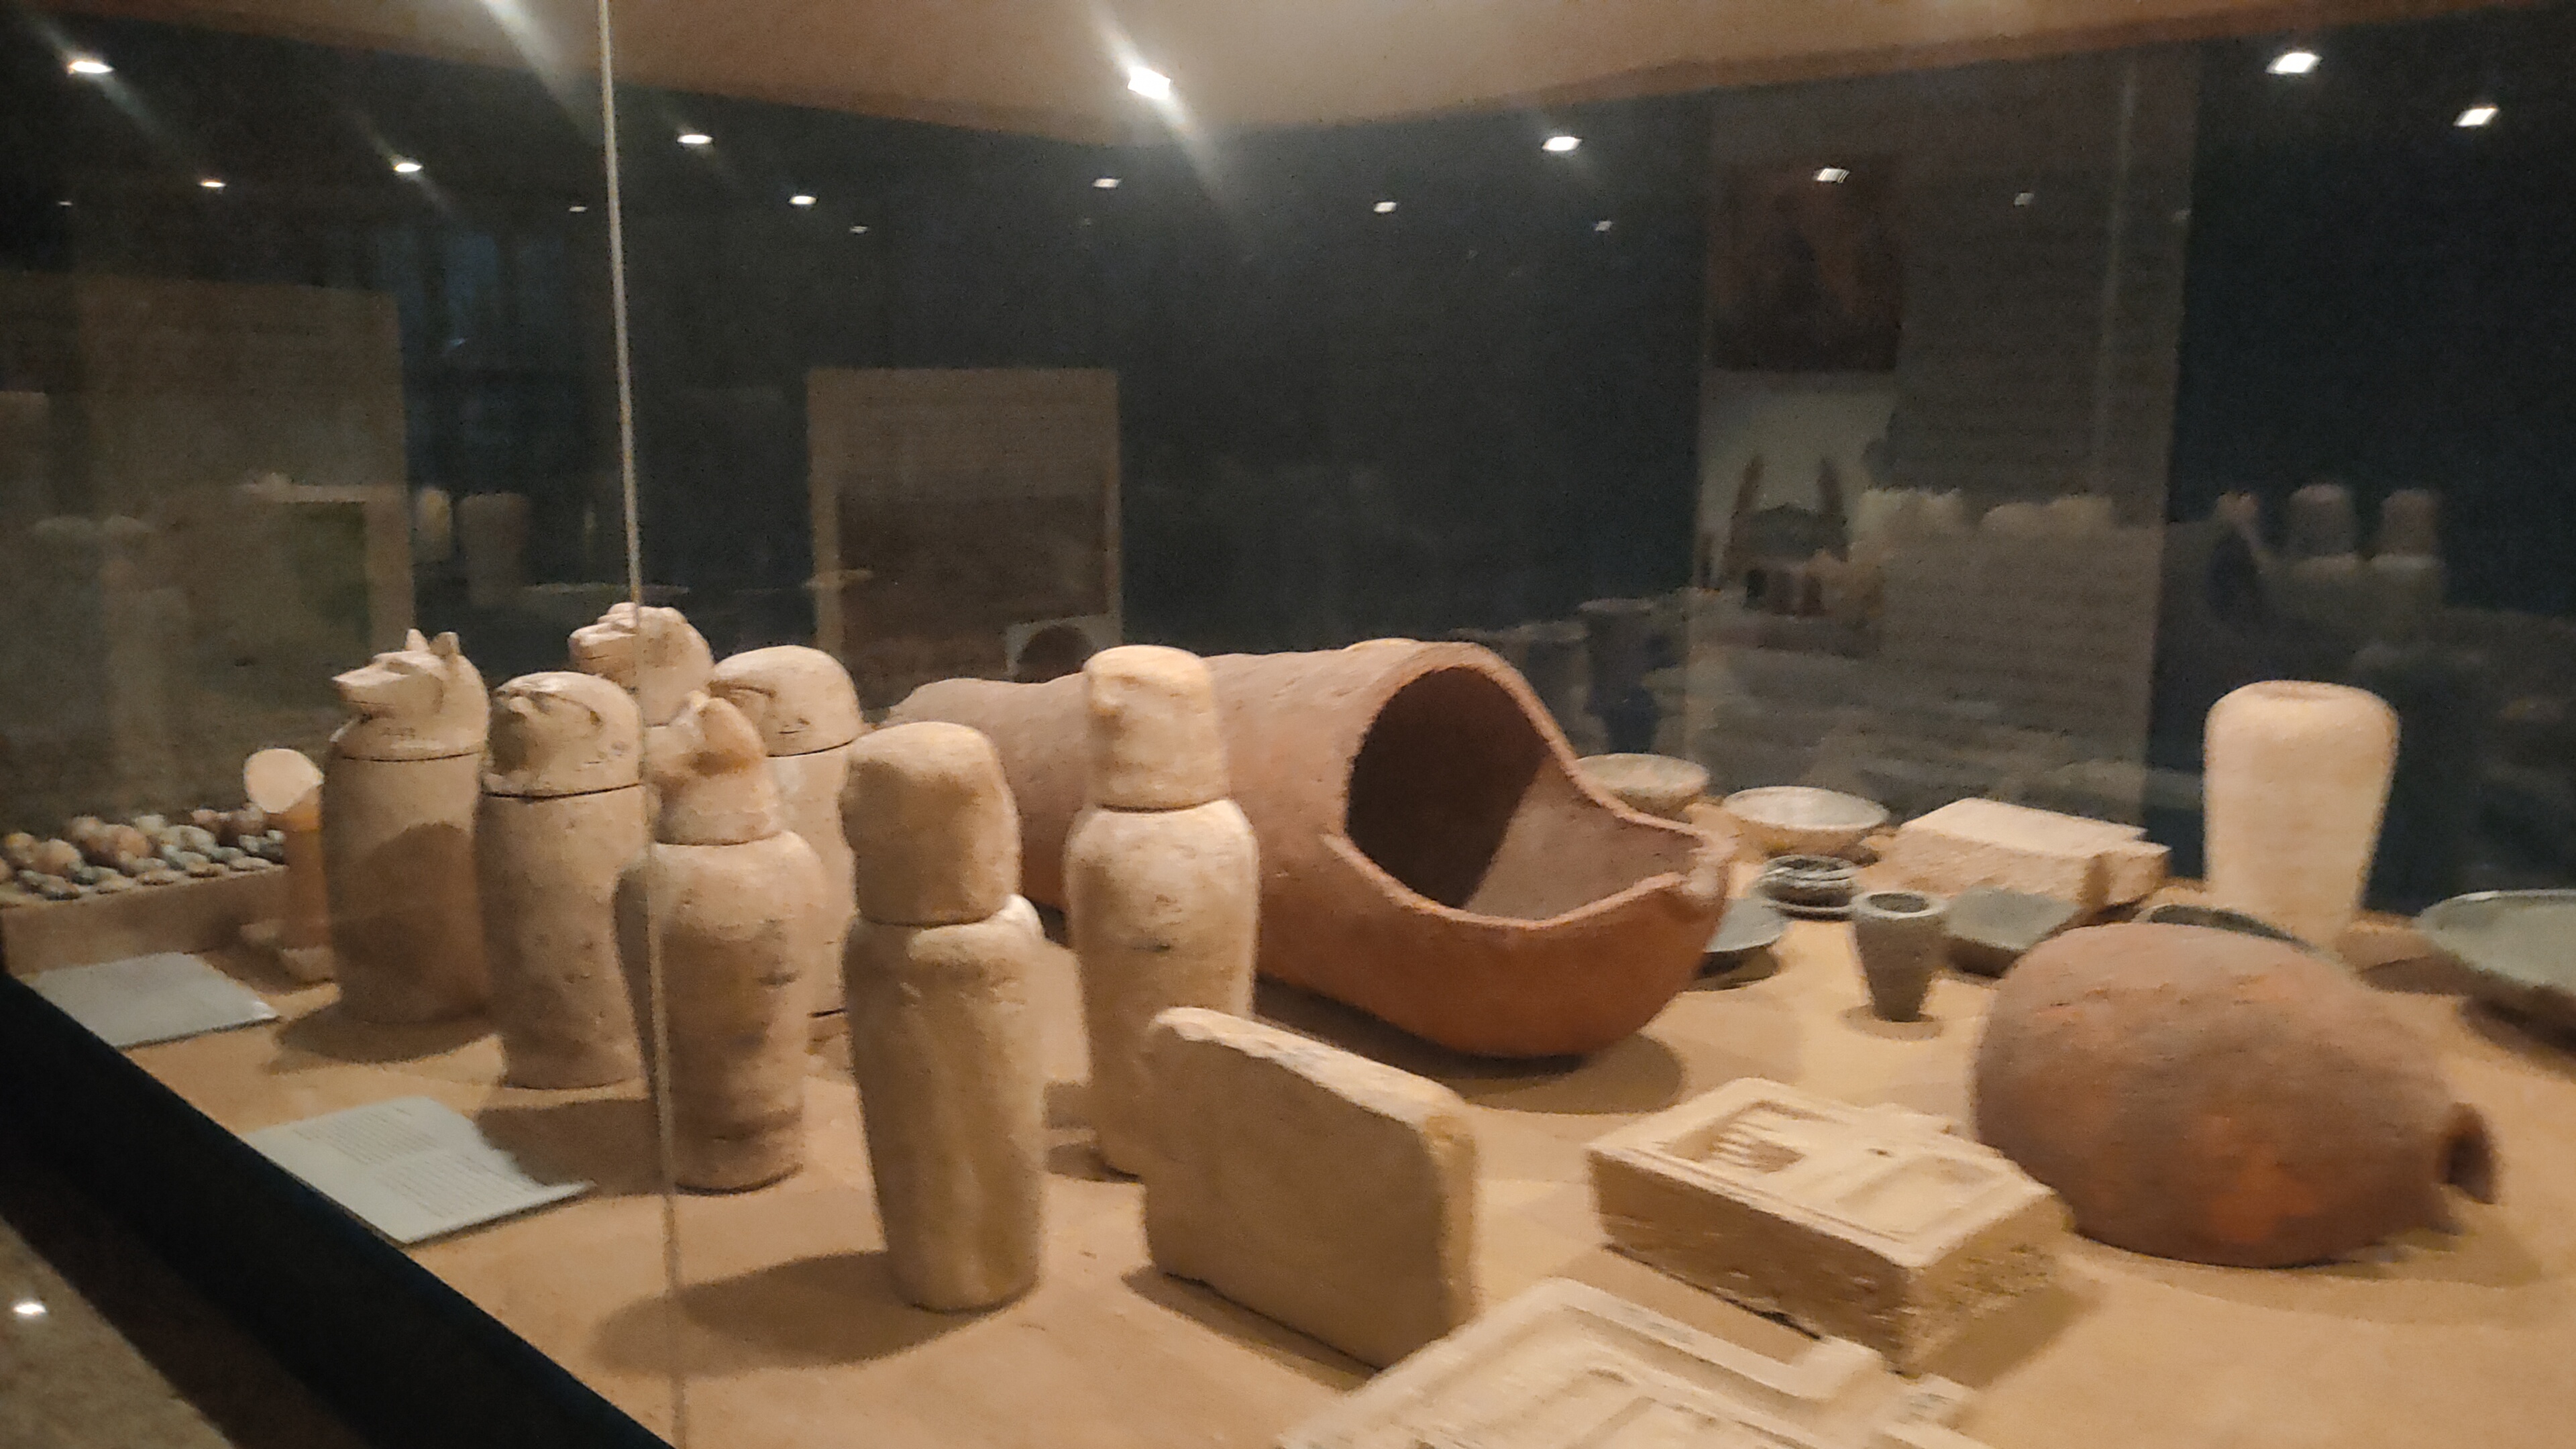 الآثار في متحف تل بسطة